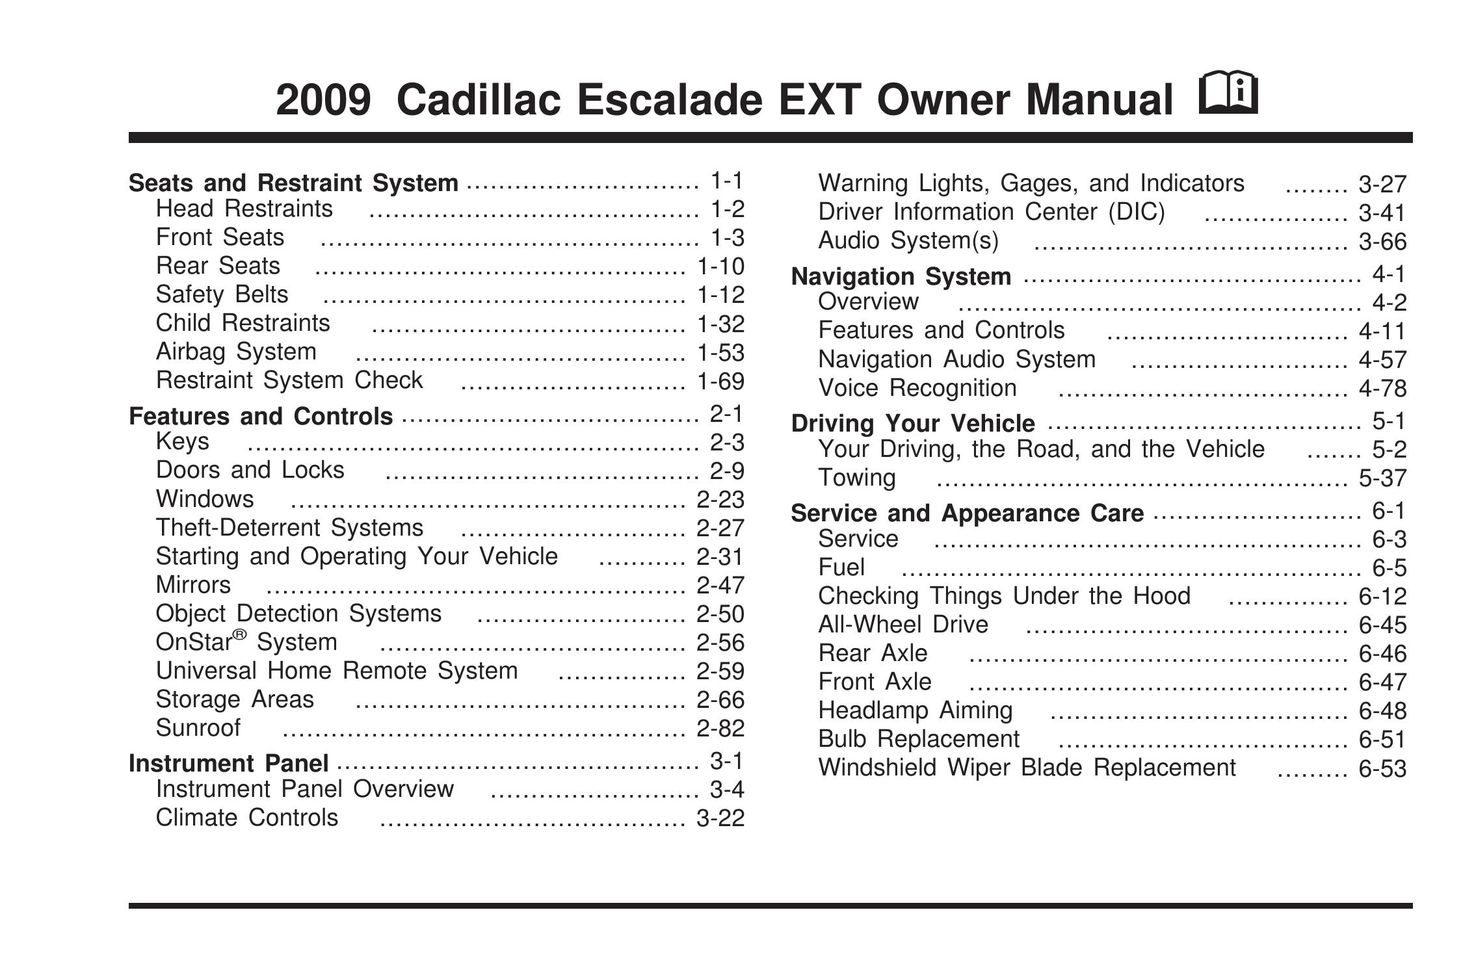 Cadillac 2009 Model Vehicle User Manual